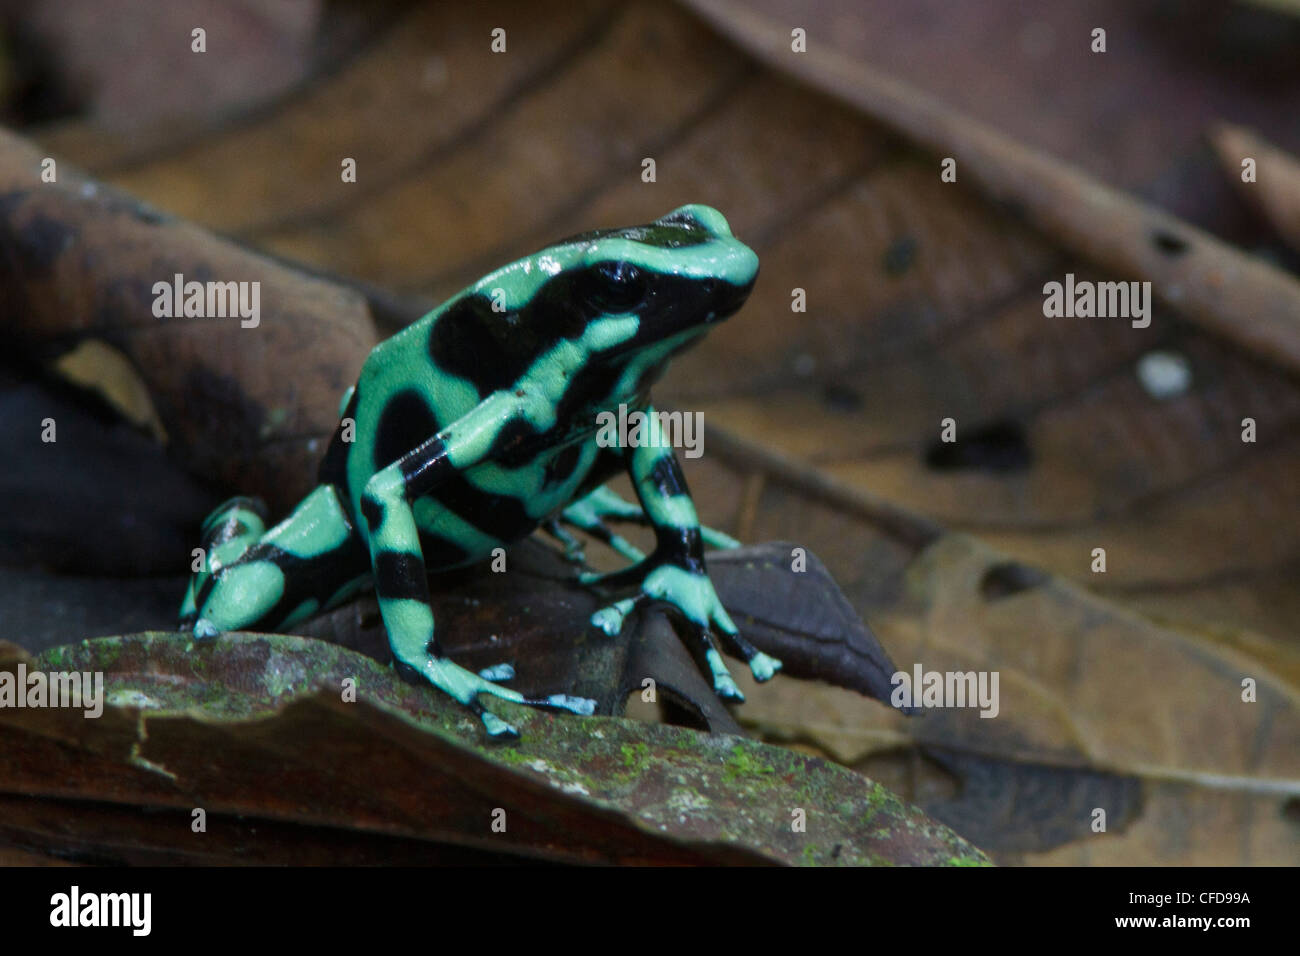 Verde y negro Poison Dart Frog encaramado en la hojarasca en la selva de Costa Rica. Foto de stock